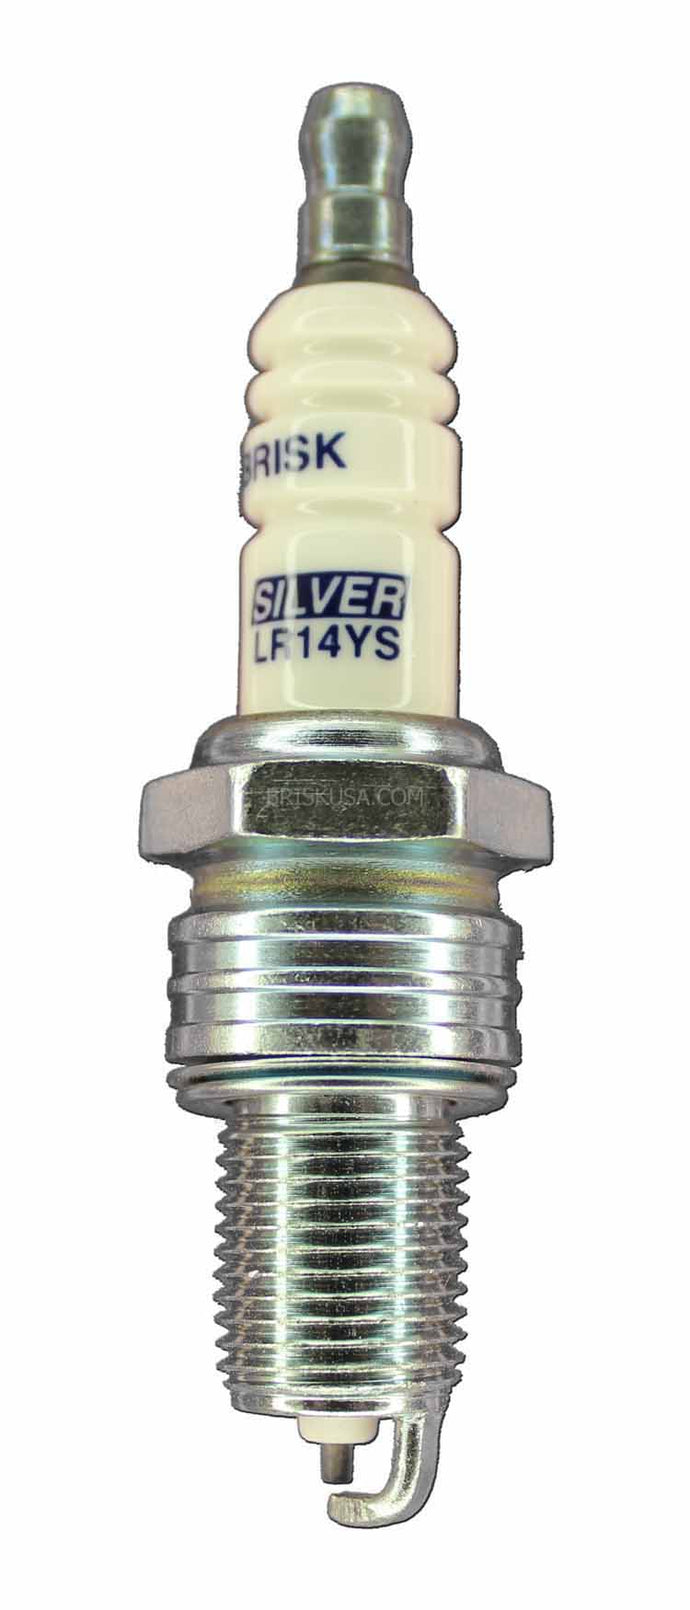 Brisk Silver Racing L10YS Spark Plug